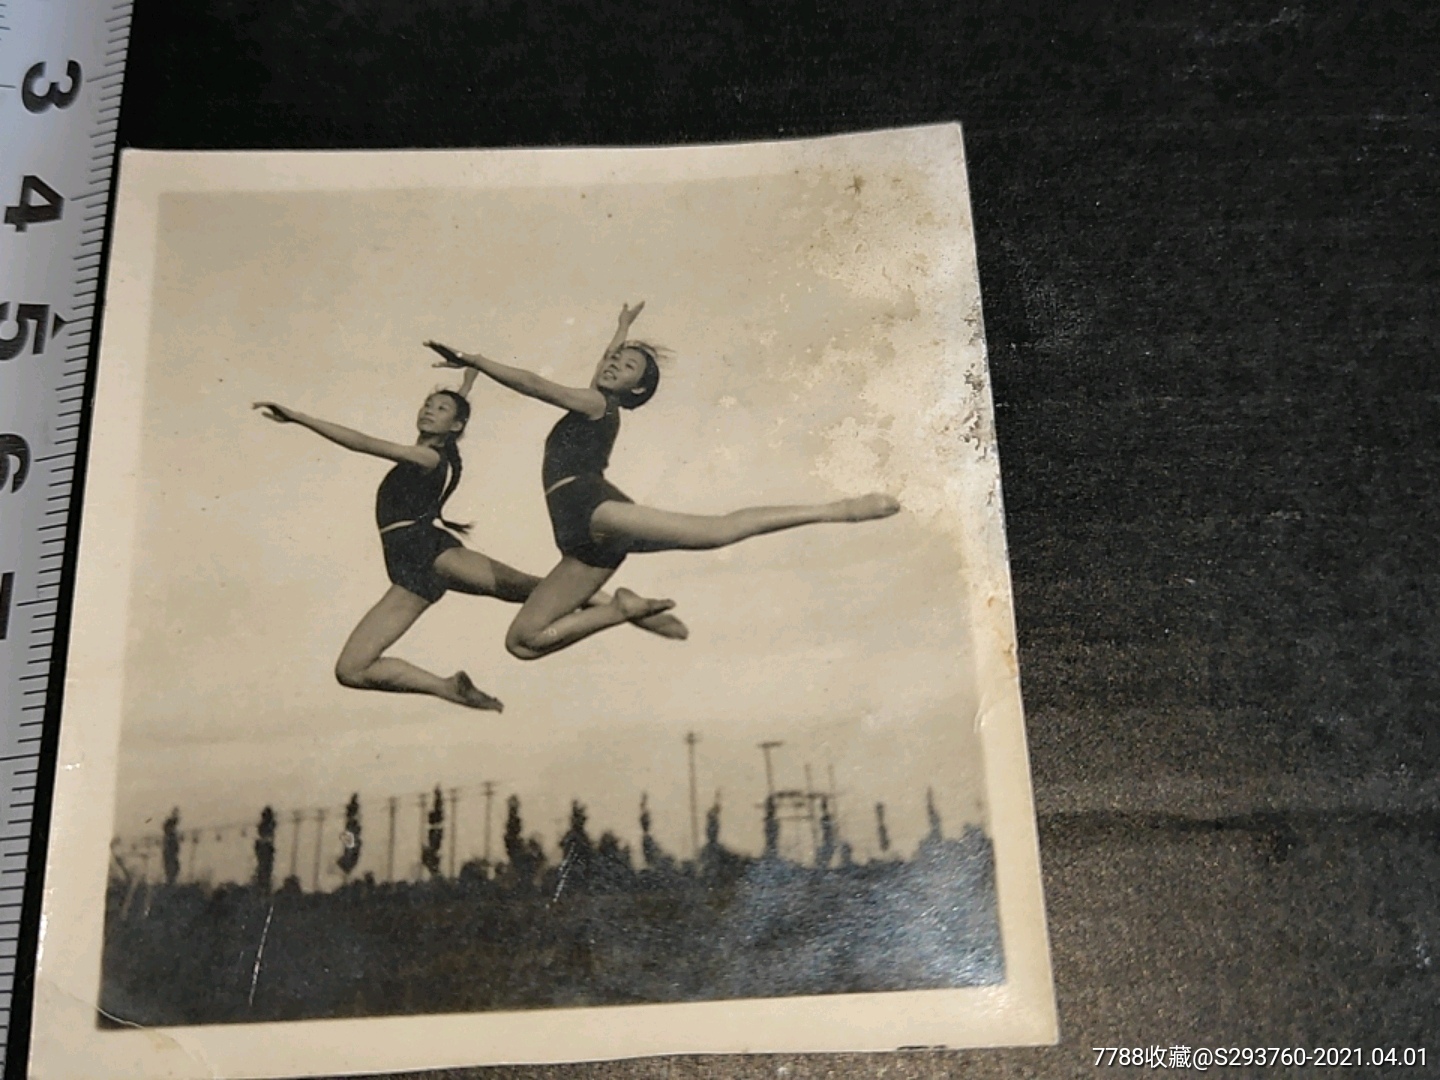 民国时期,两位美女体操运动员腾空而起